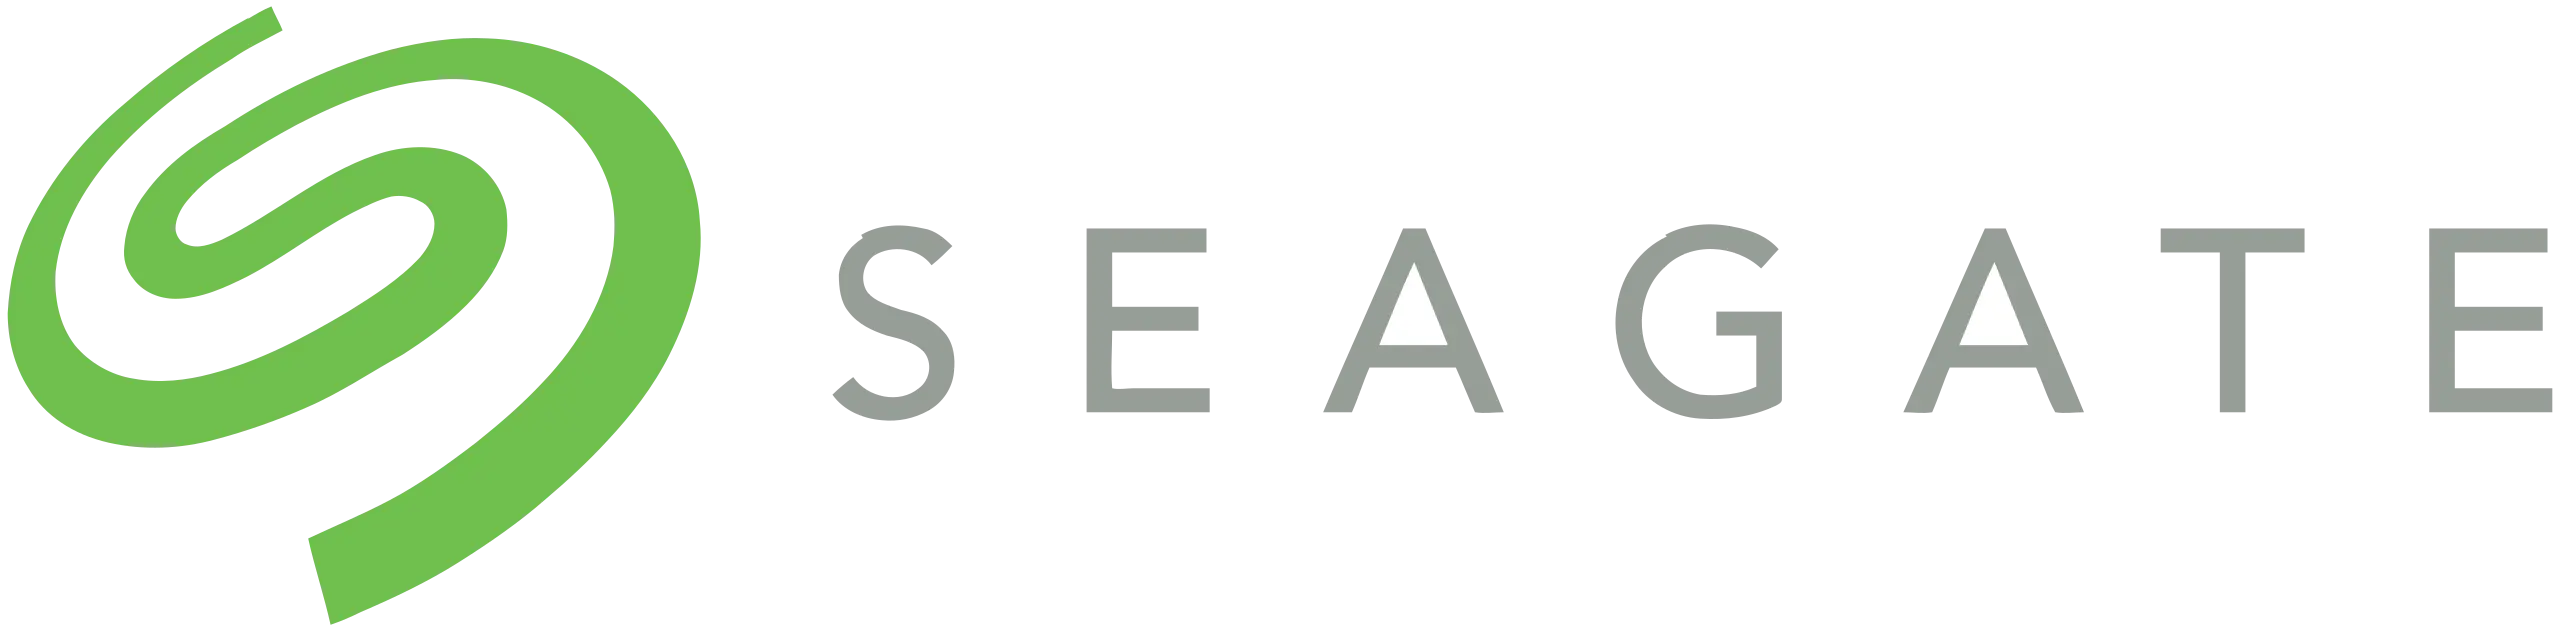 Seagate_logo